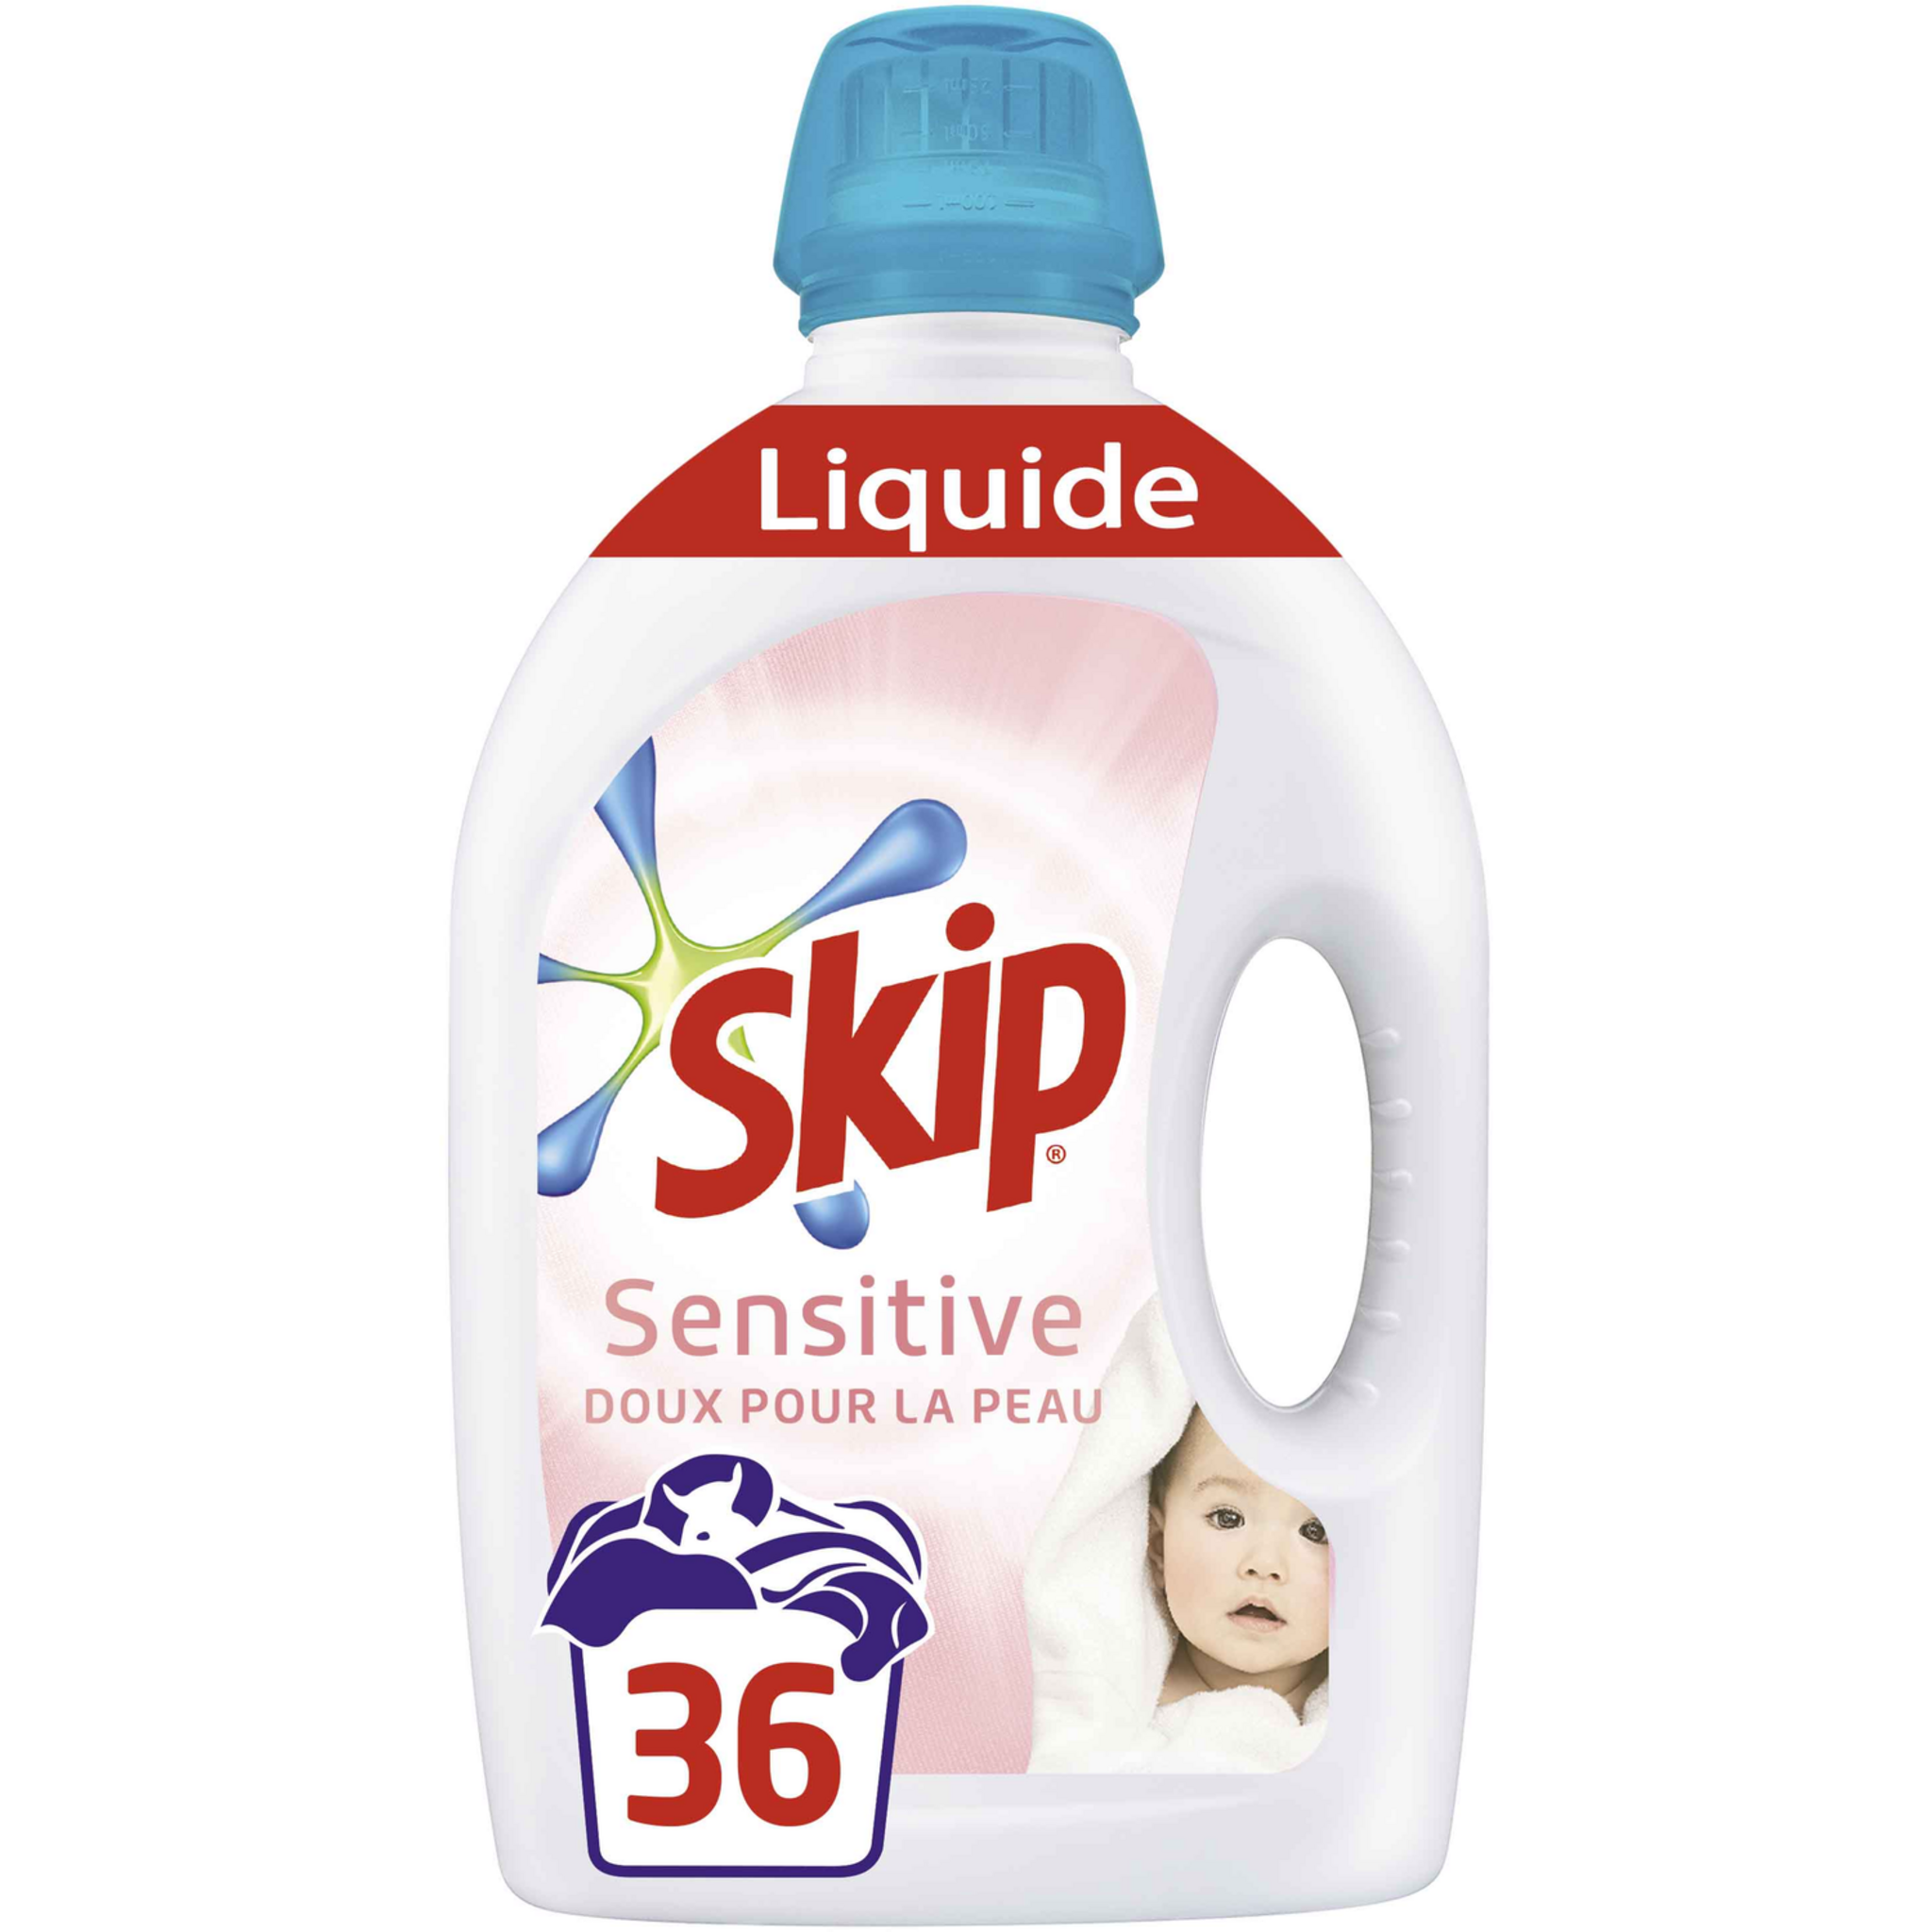 Promo Lessive liquide sensitive doux pour la peau skip chez